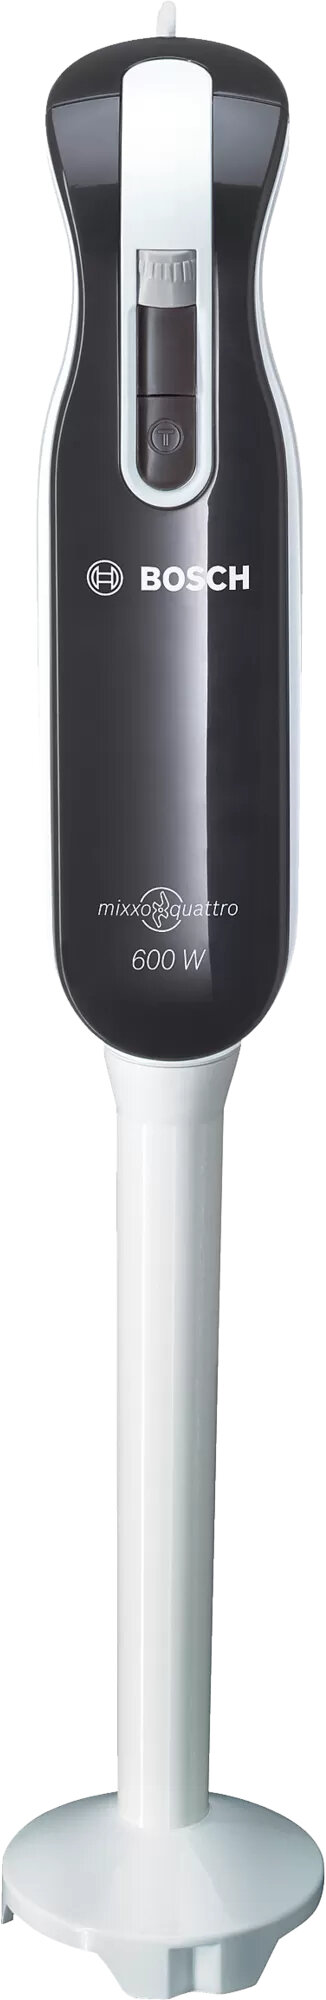 BOSCH Mixxo Quattro MSM 7300 Blender - niskie ceny i opinie w Media Expert